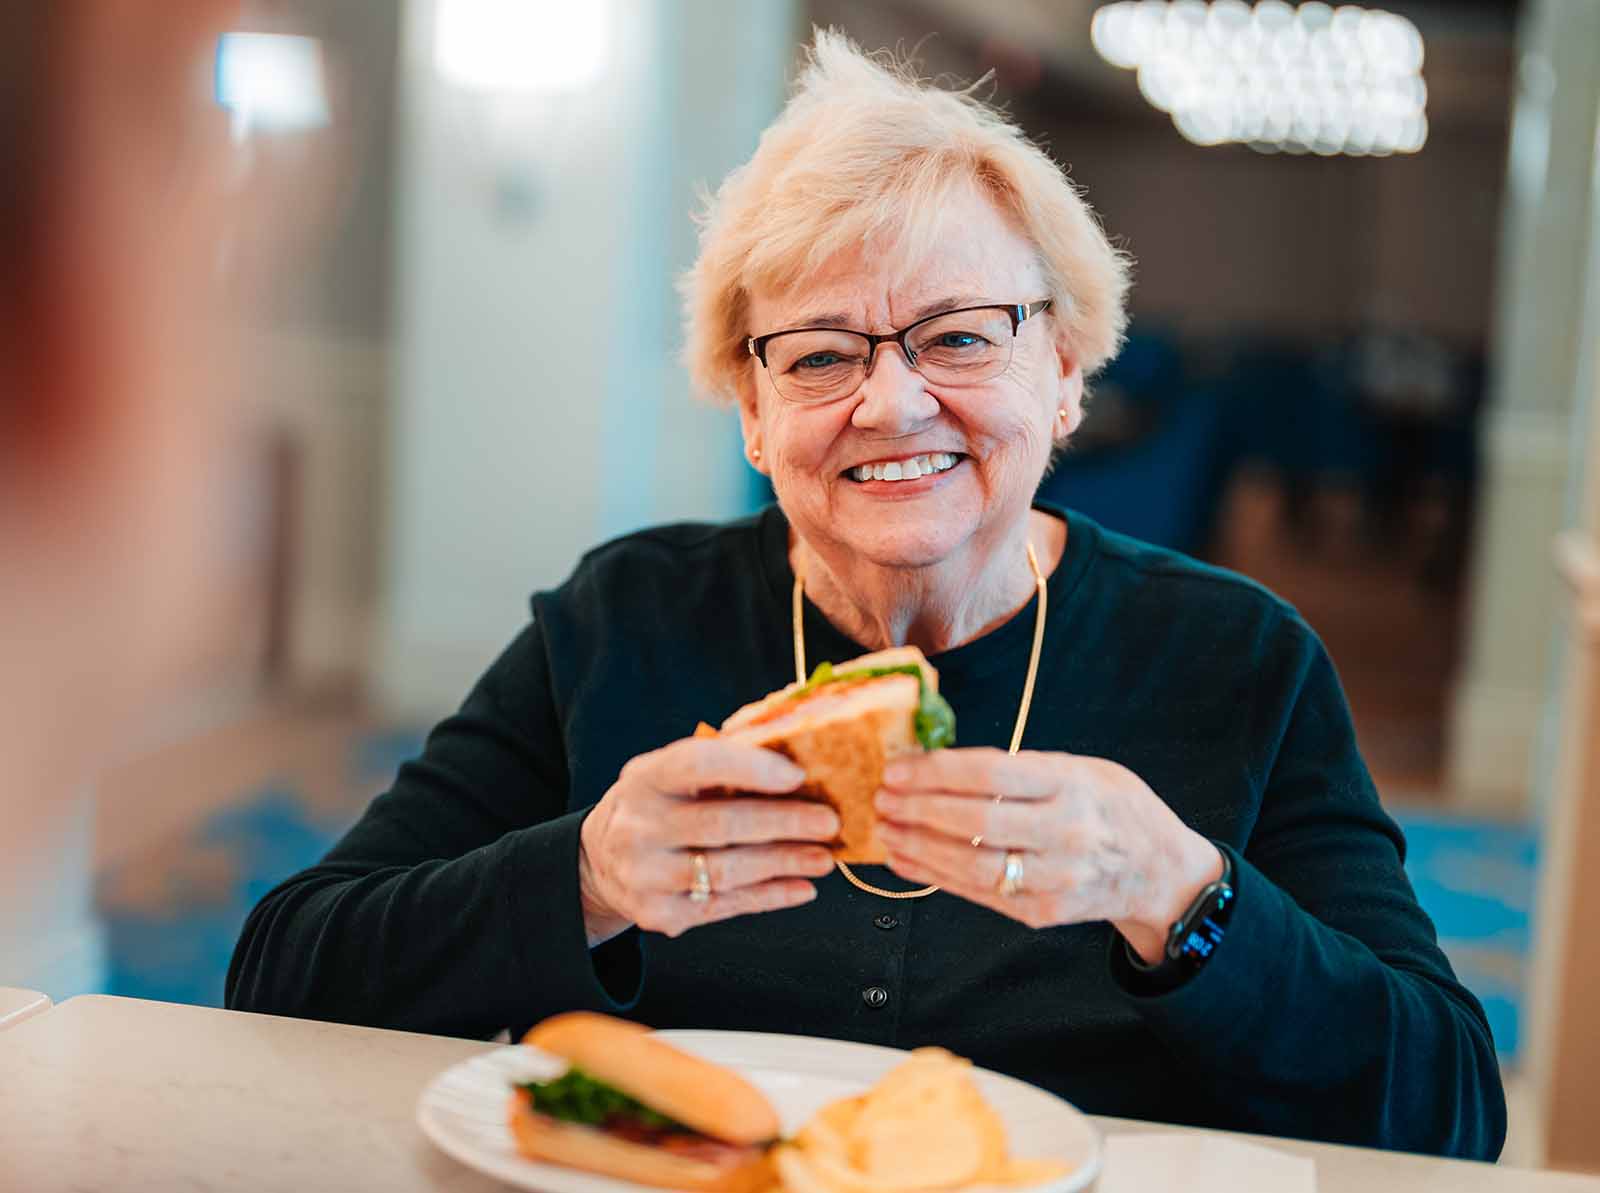 A senior woman enjoys a sandwich